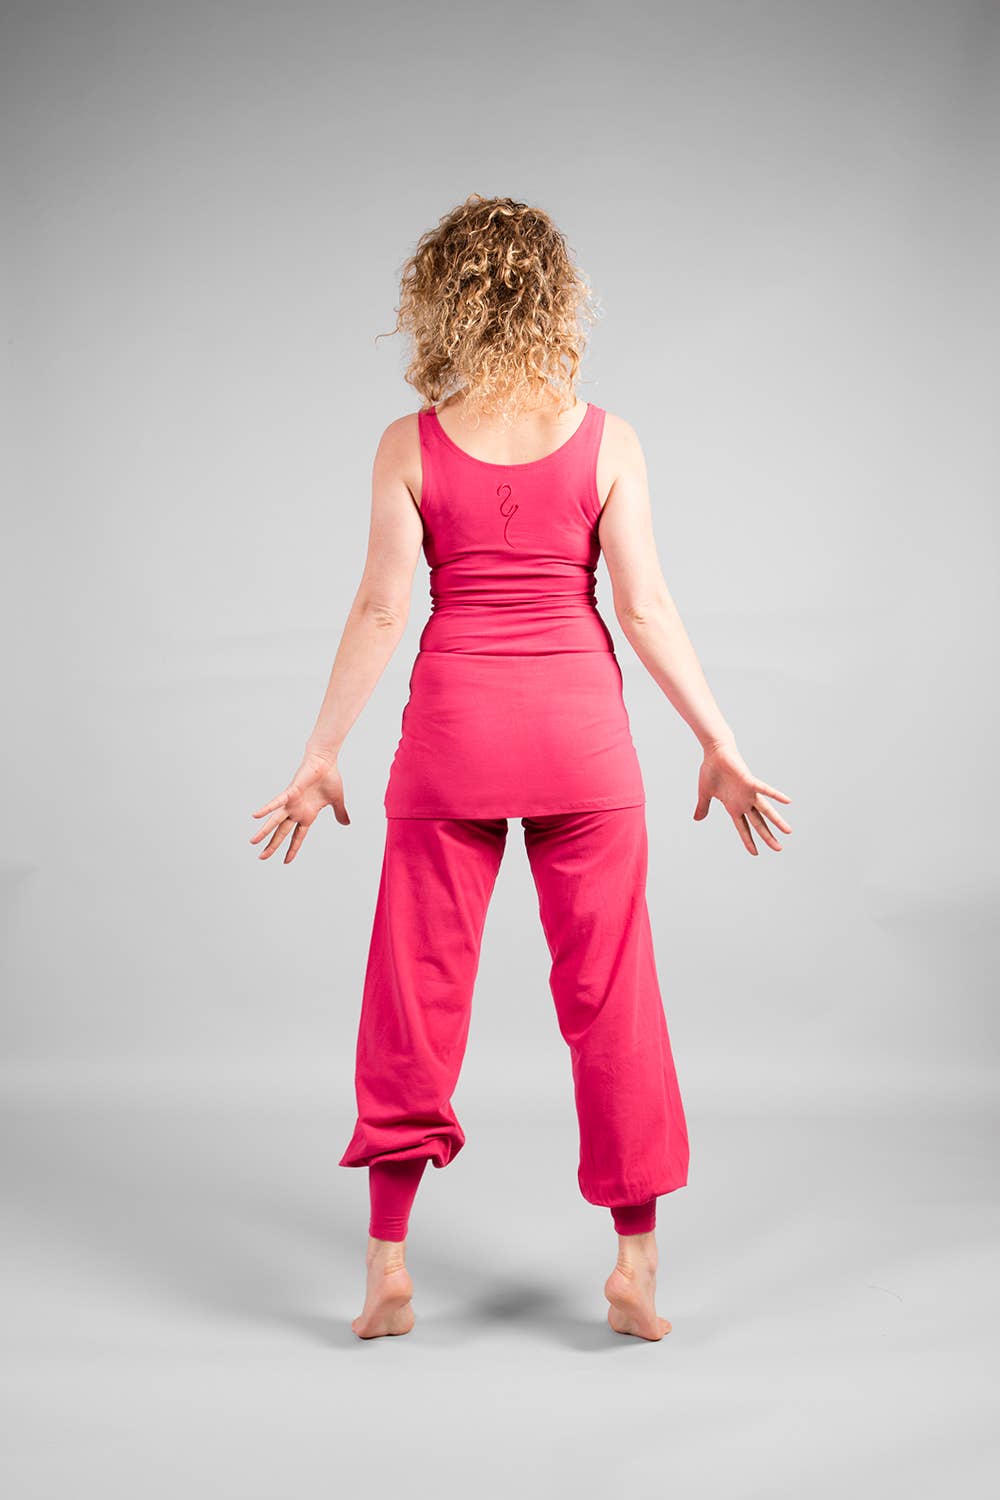 Sohang Yoga Pants Women, Saffron